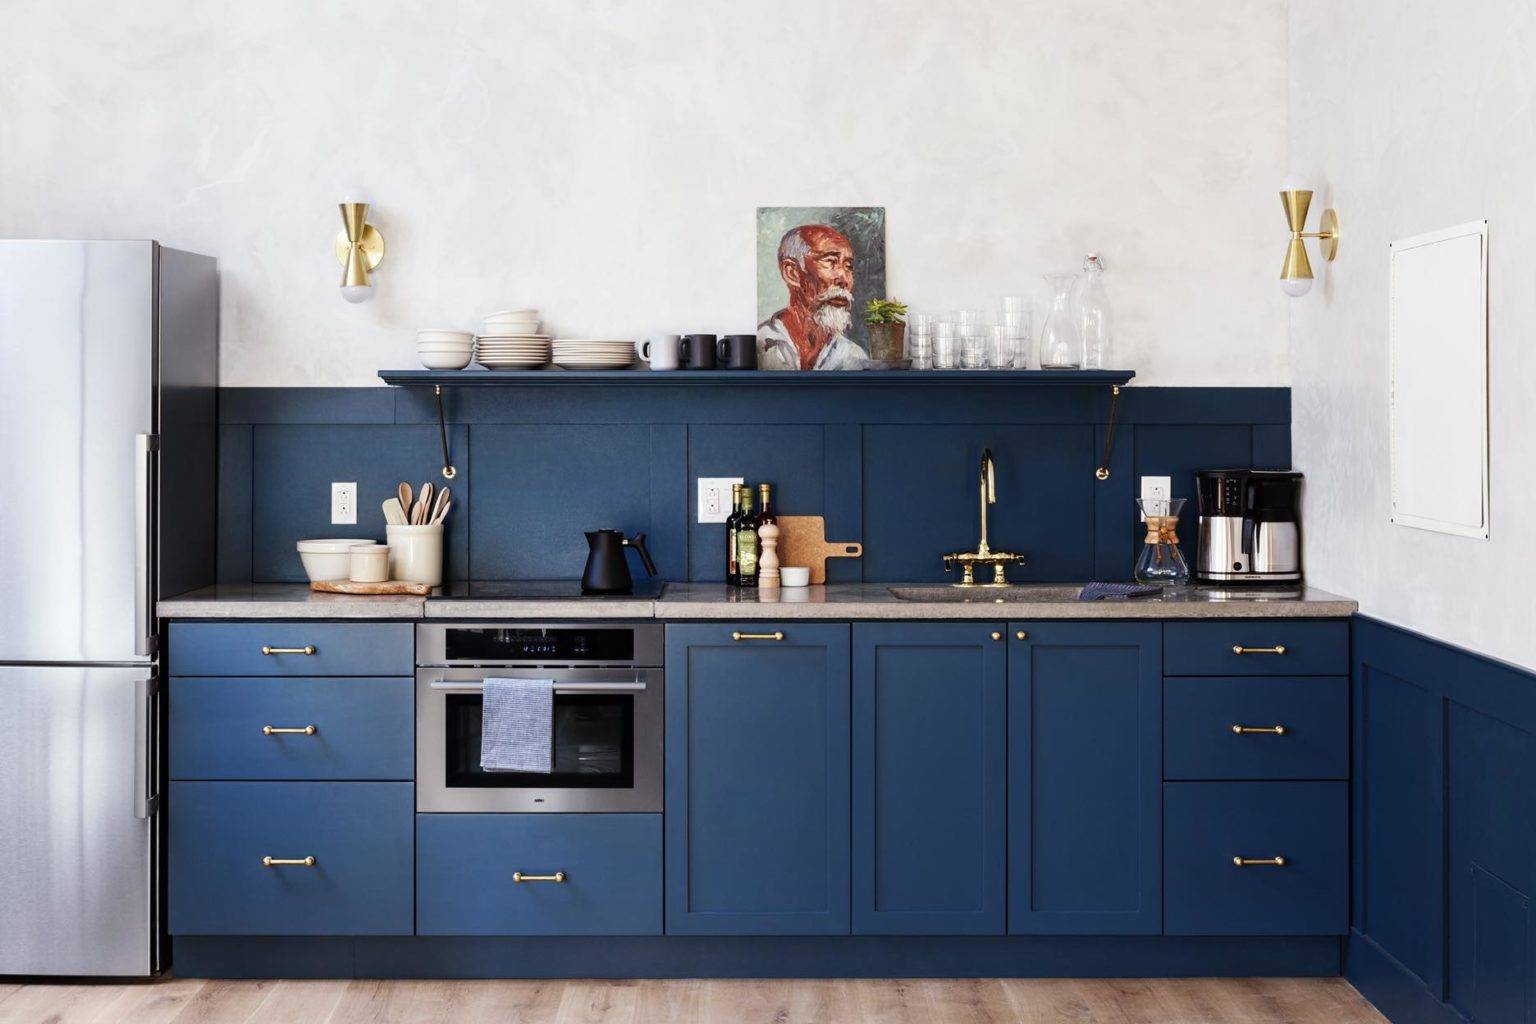 фото синих кухонных гарнитуров